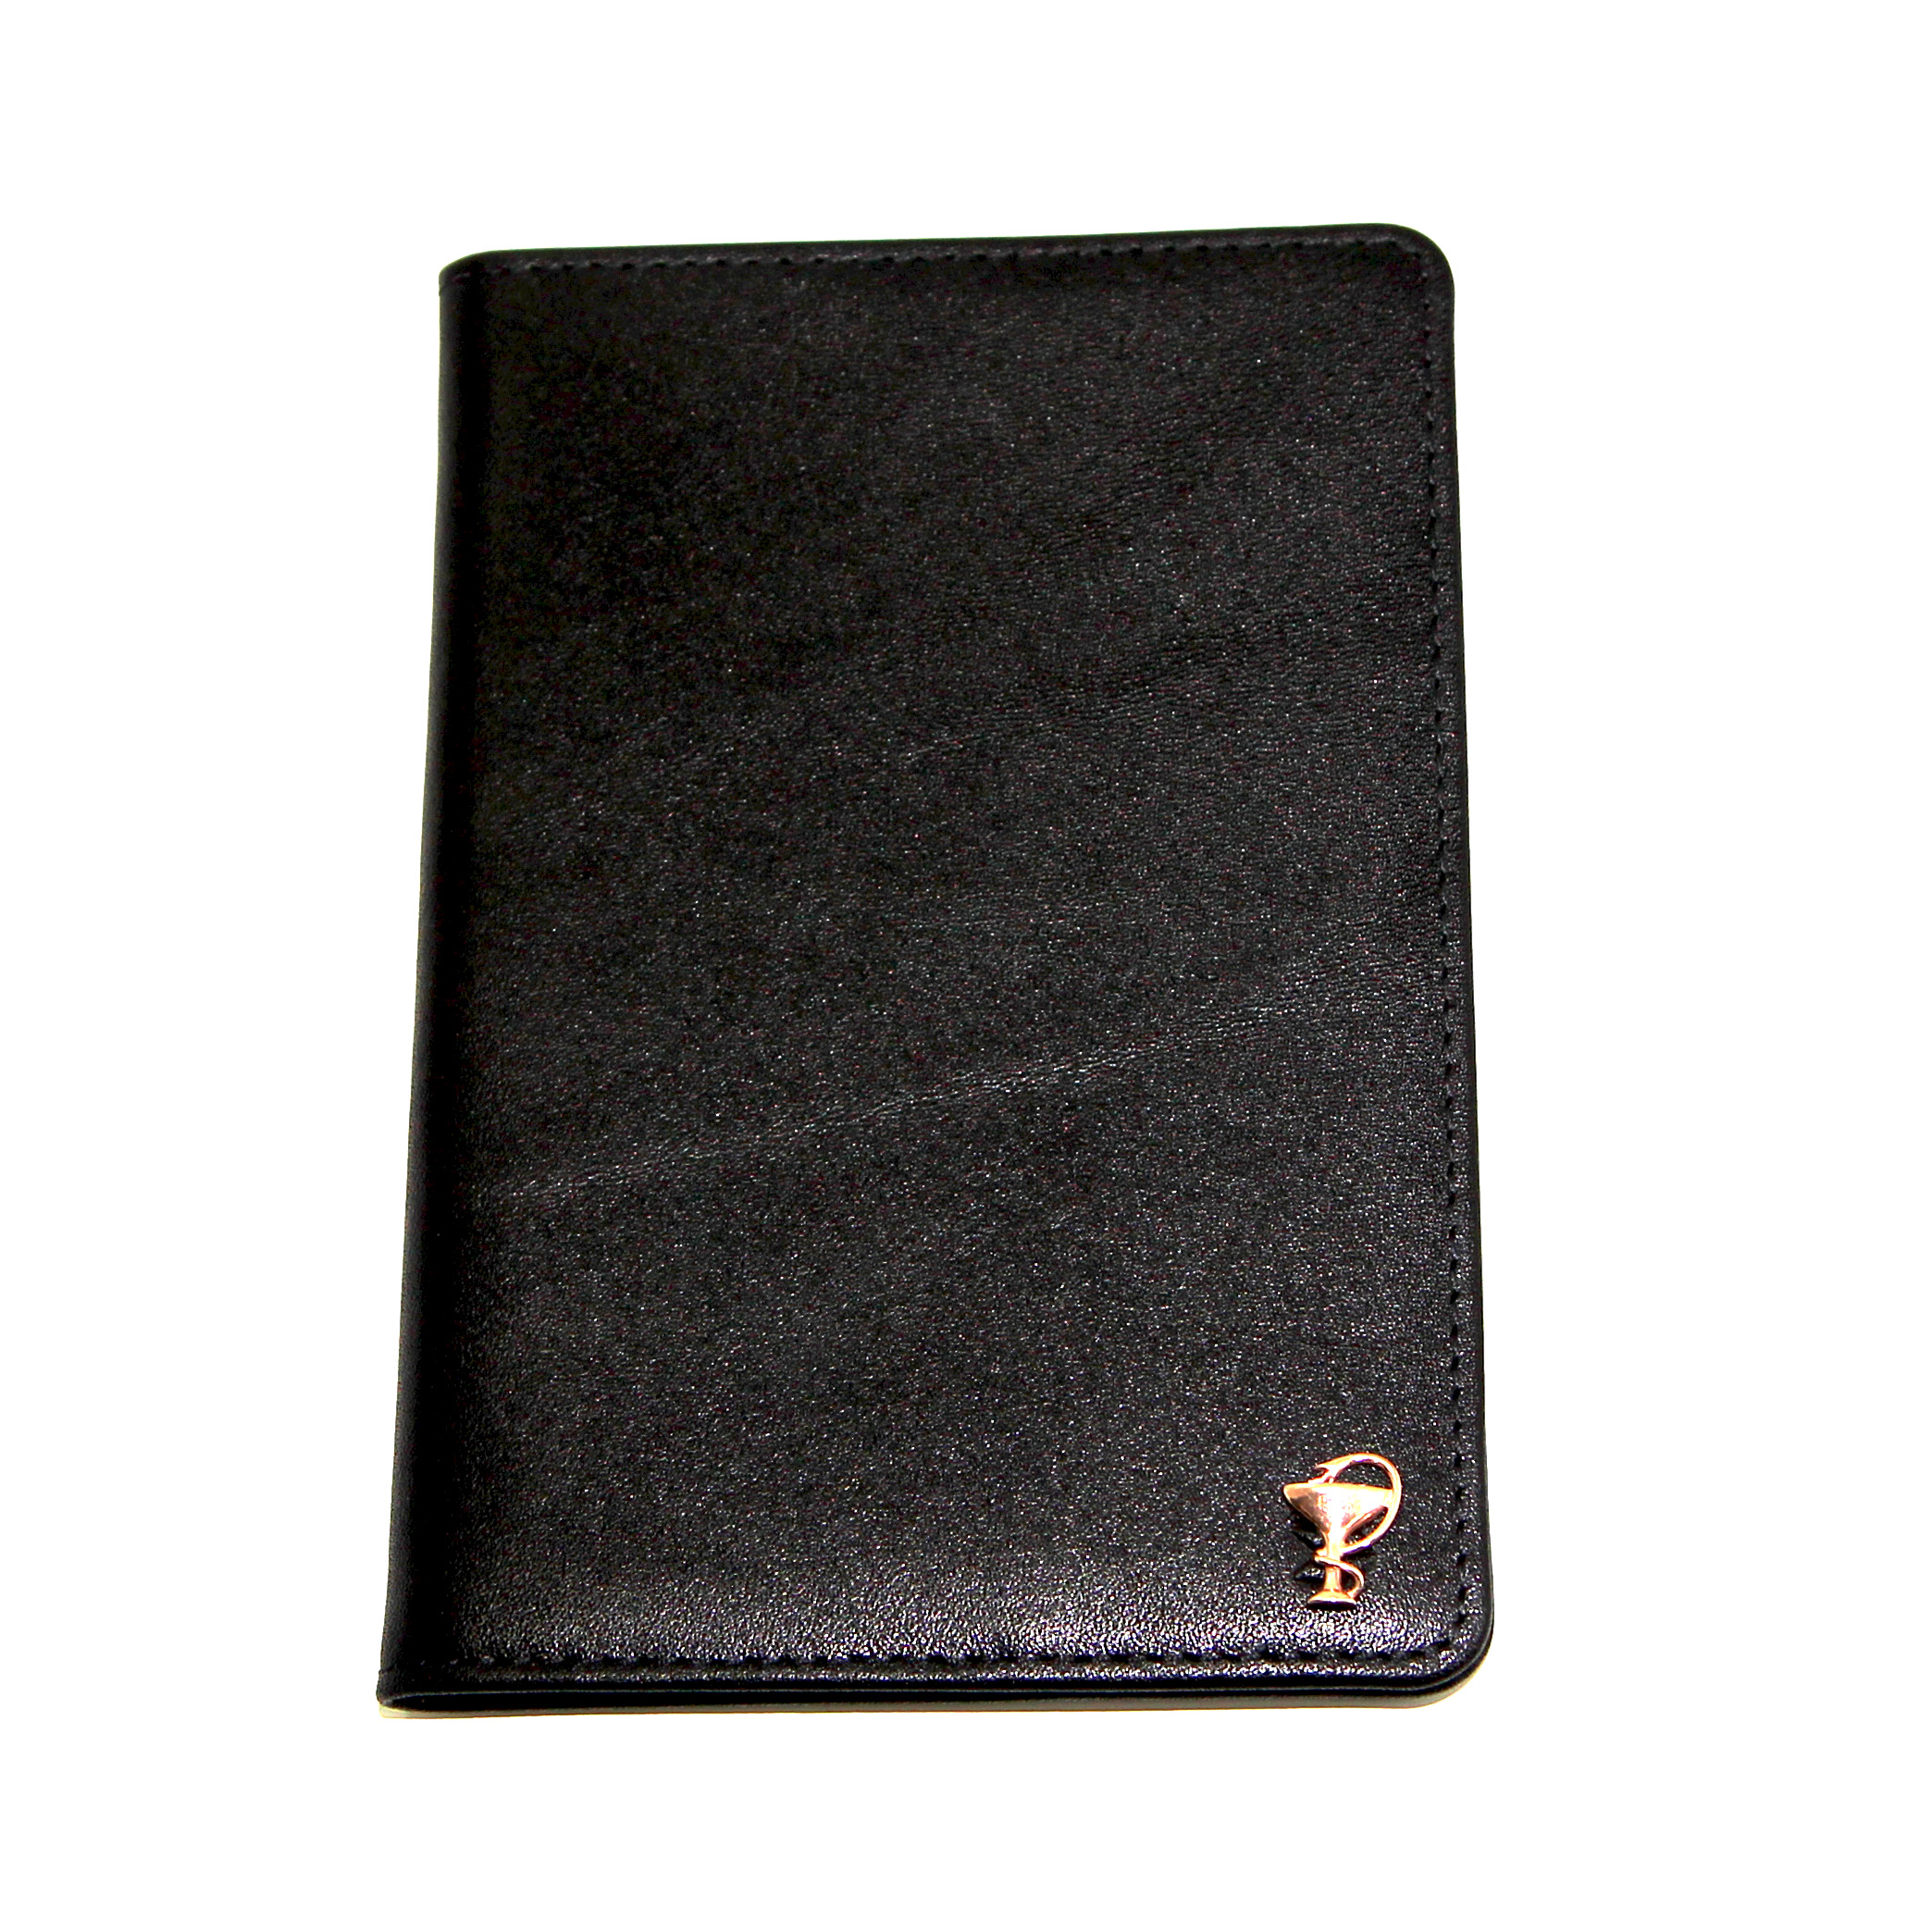 Черная кожаная обложка для паспорта для врачей SOLTAN 010 21 01 со вставкой из серебраФото 25014-01.jpg